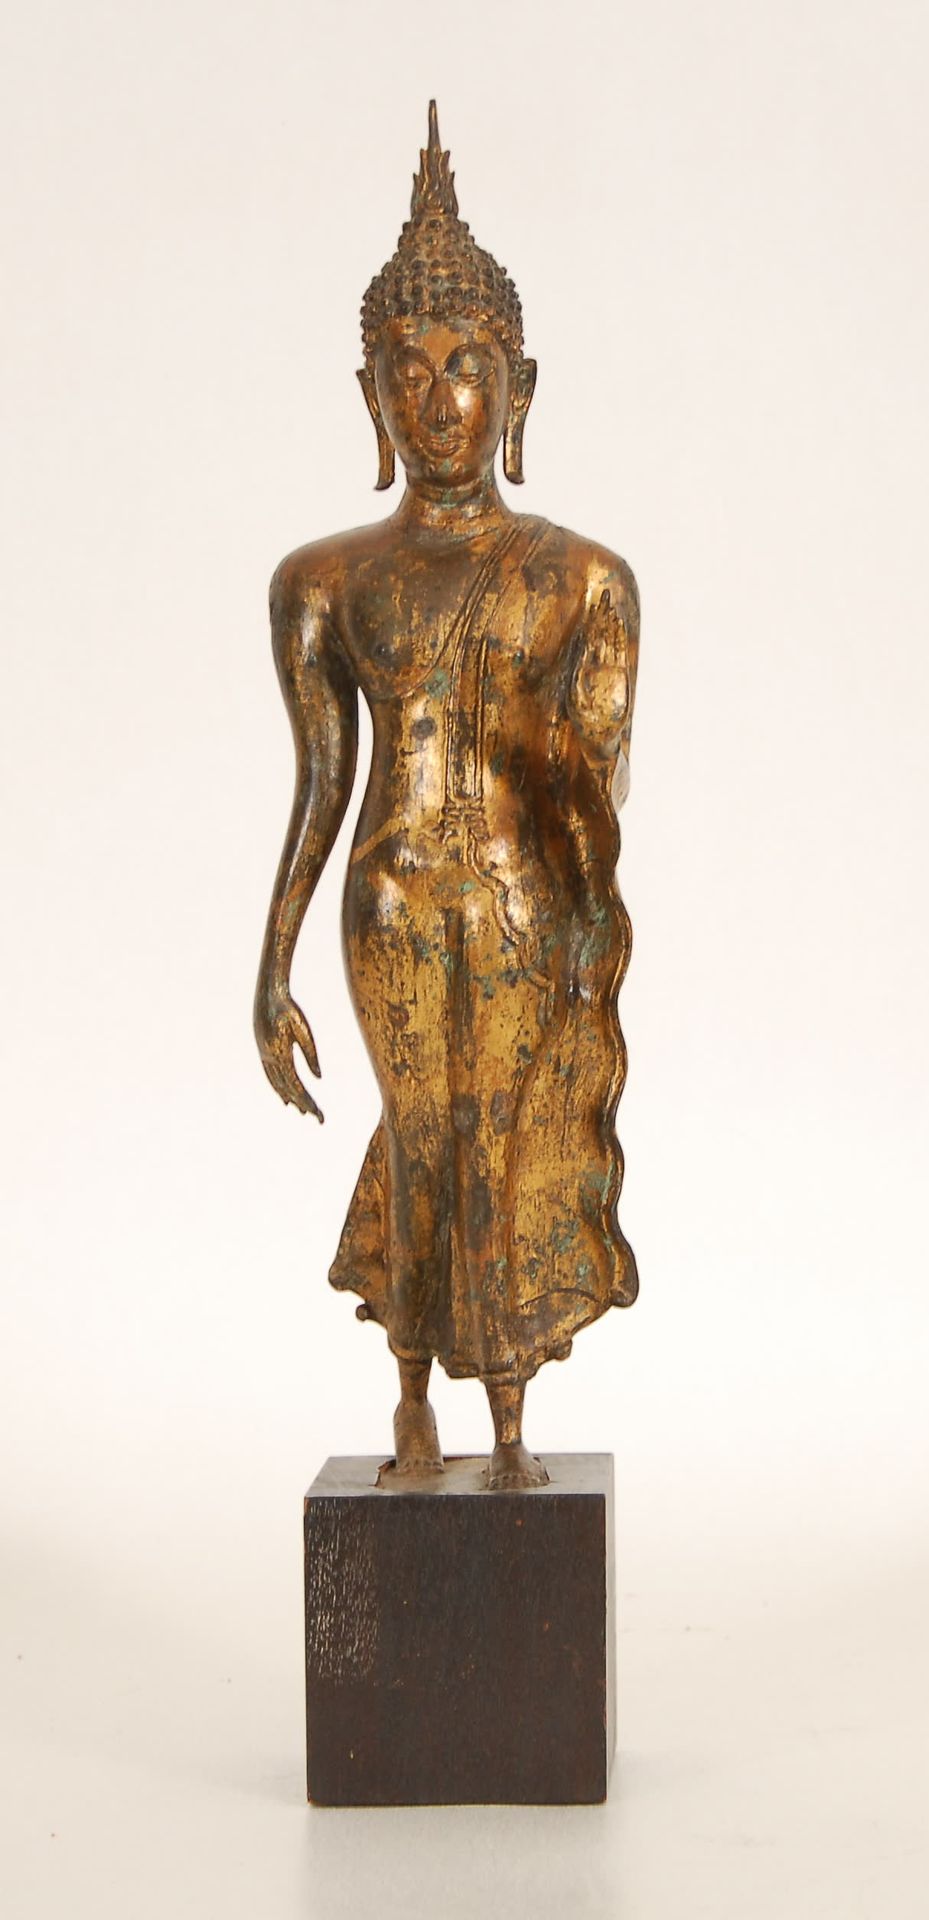 Null Bouddha debout
Bronze doré. Thaïlande.
H. 41 cm.